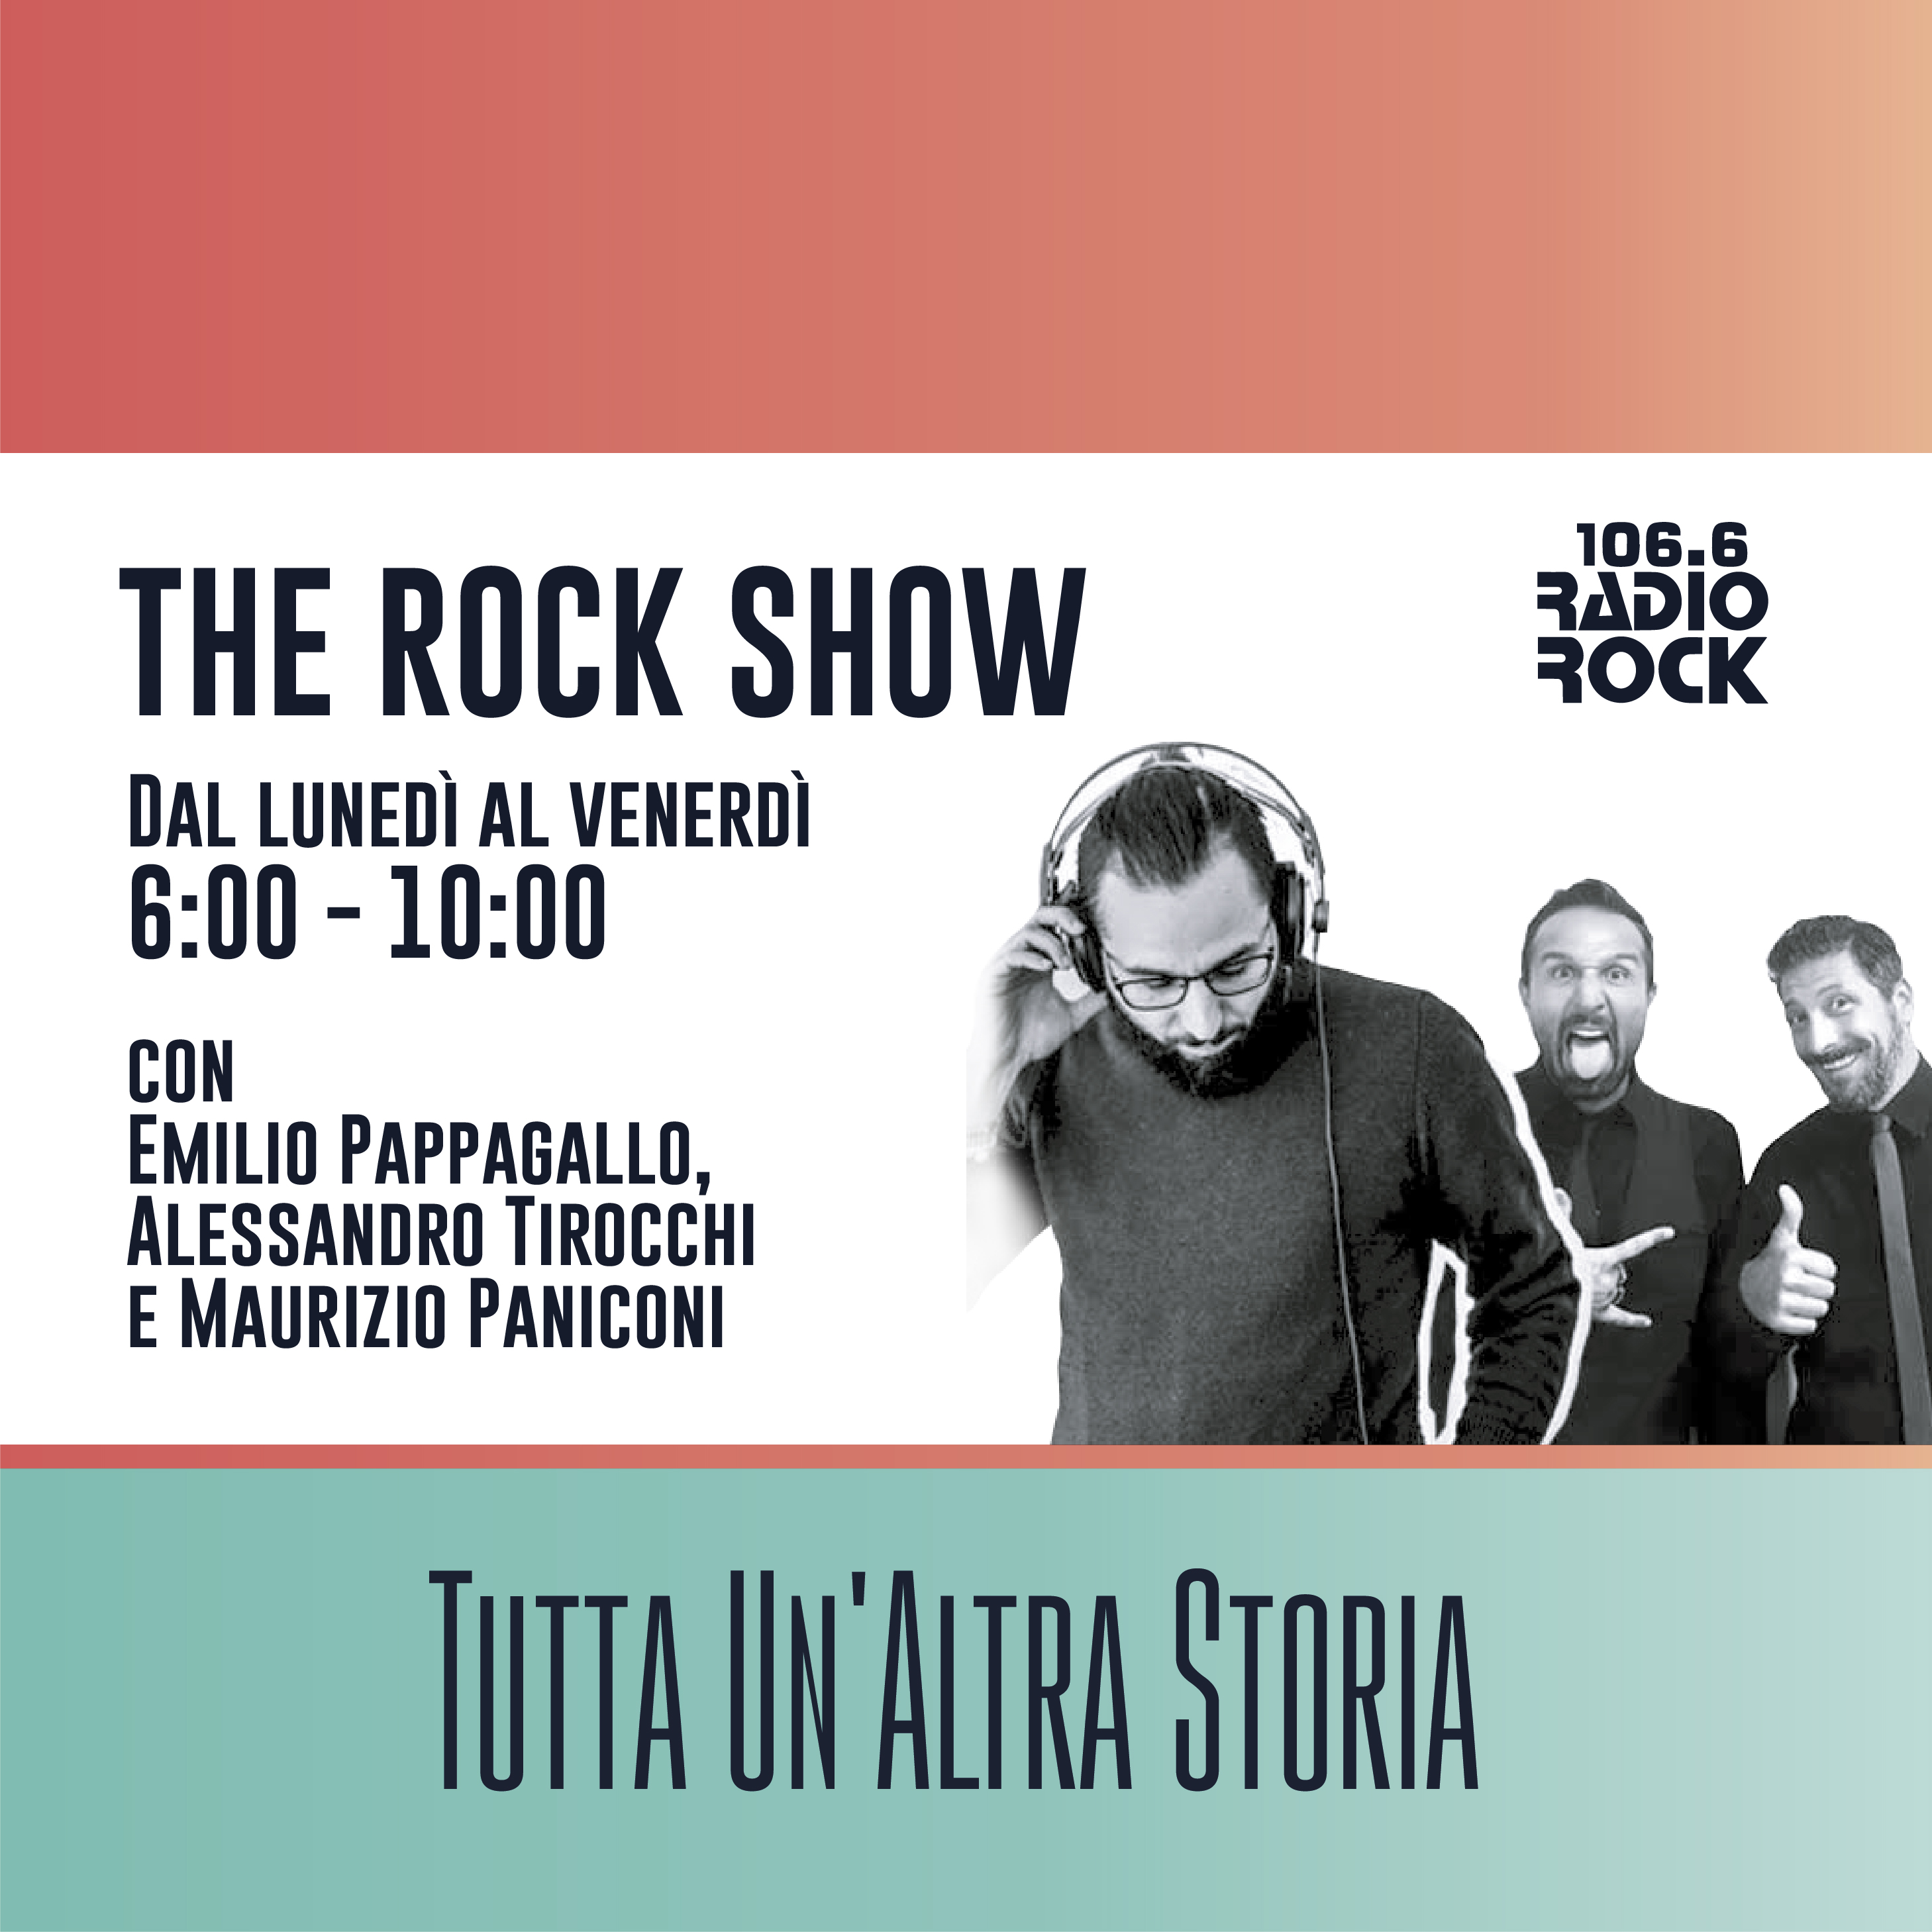 The Rock Show: Cambiare o crescere (19-01-21)